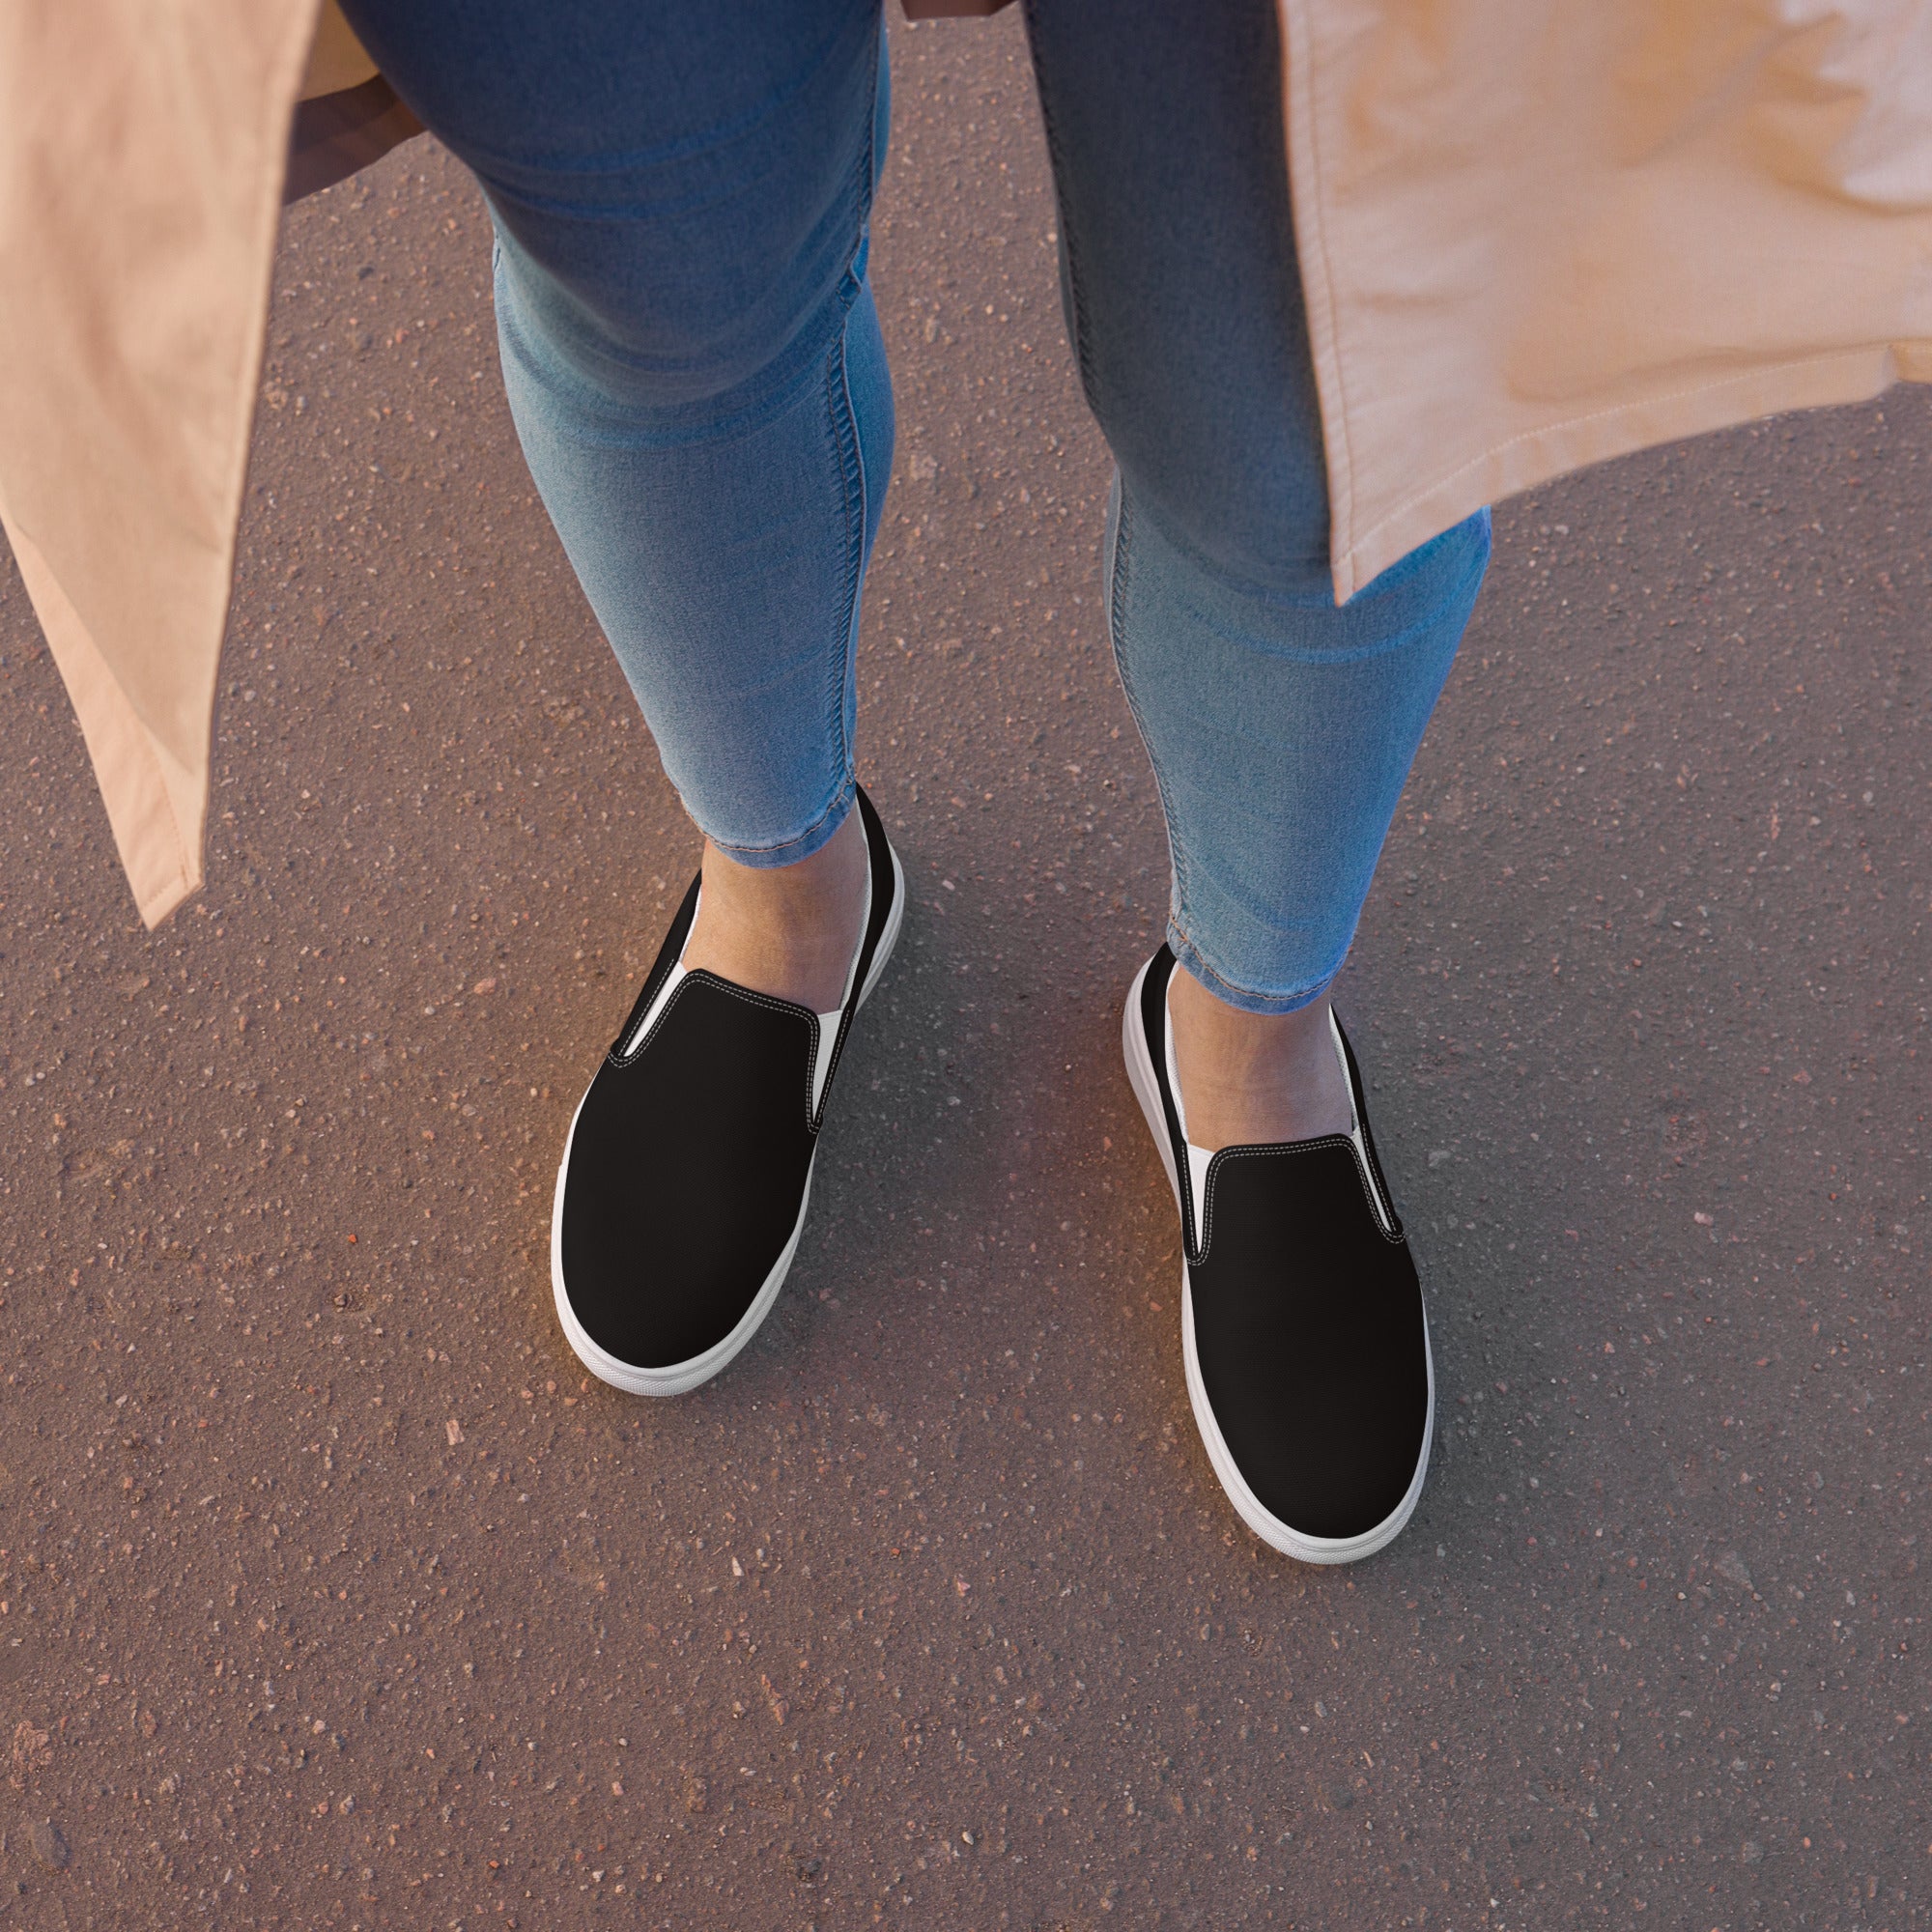 Middleton's Black Women’s slip-on shoes